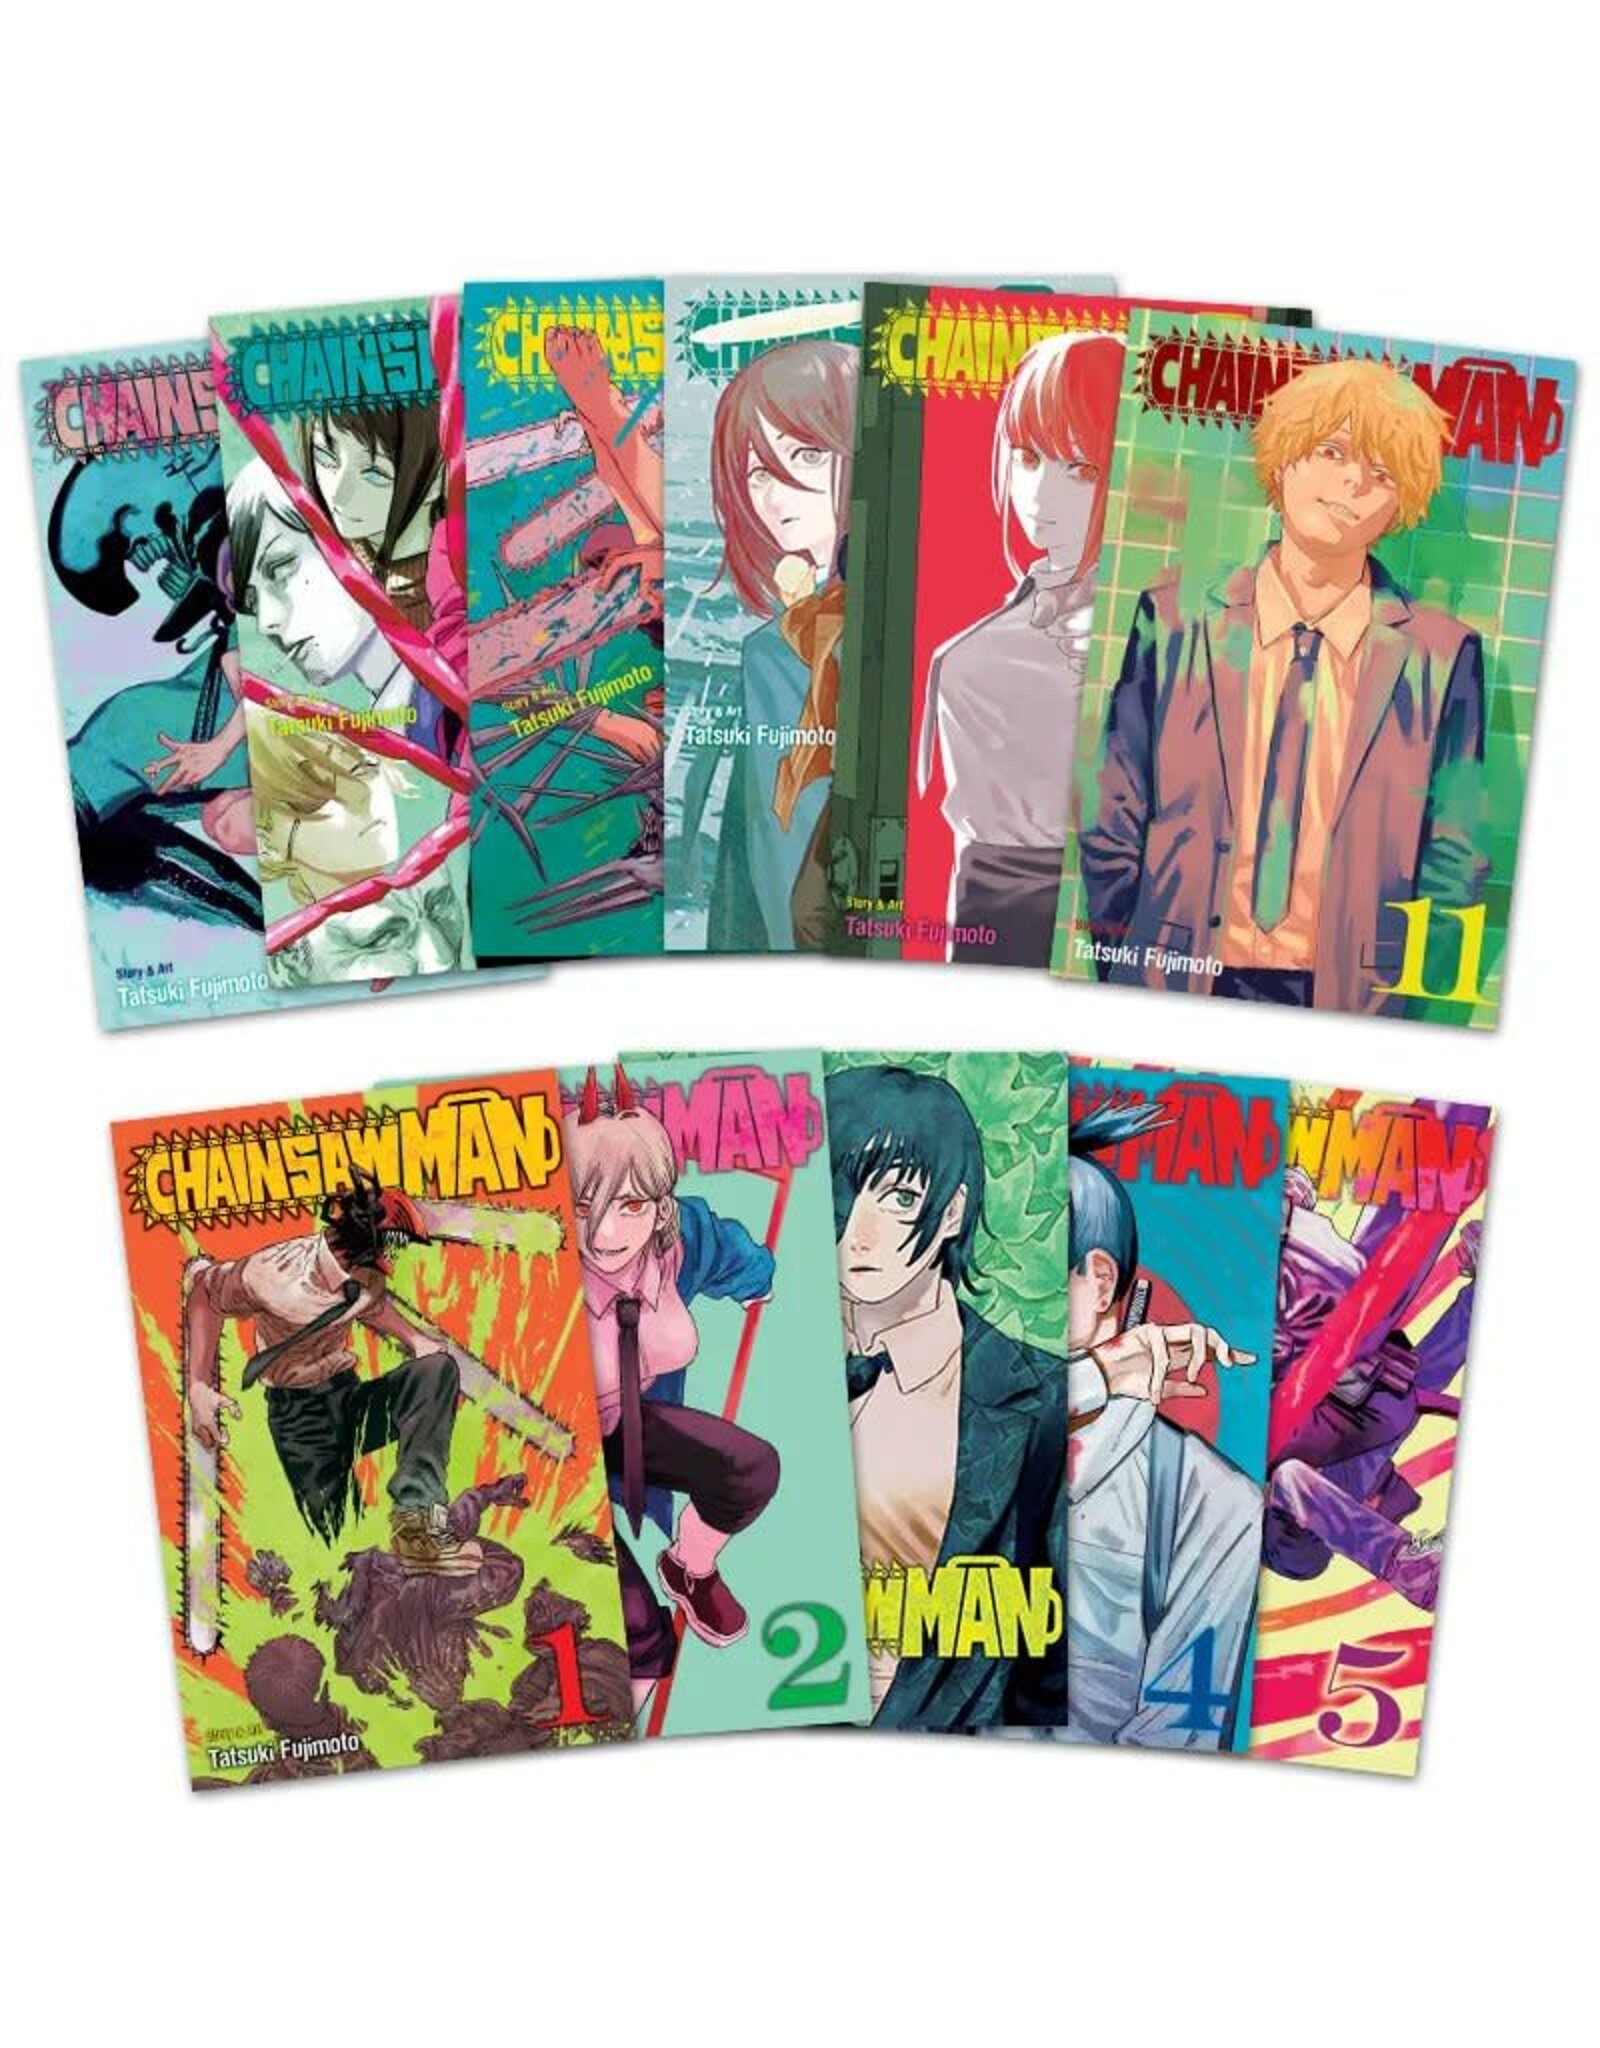 Chainsaw Man Manga Box Set 01 - Volumes 01-11 (English) - Manga